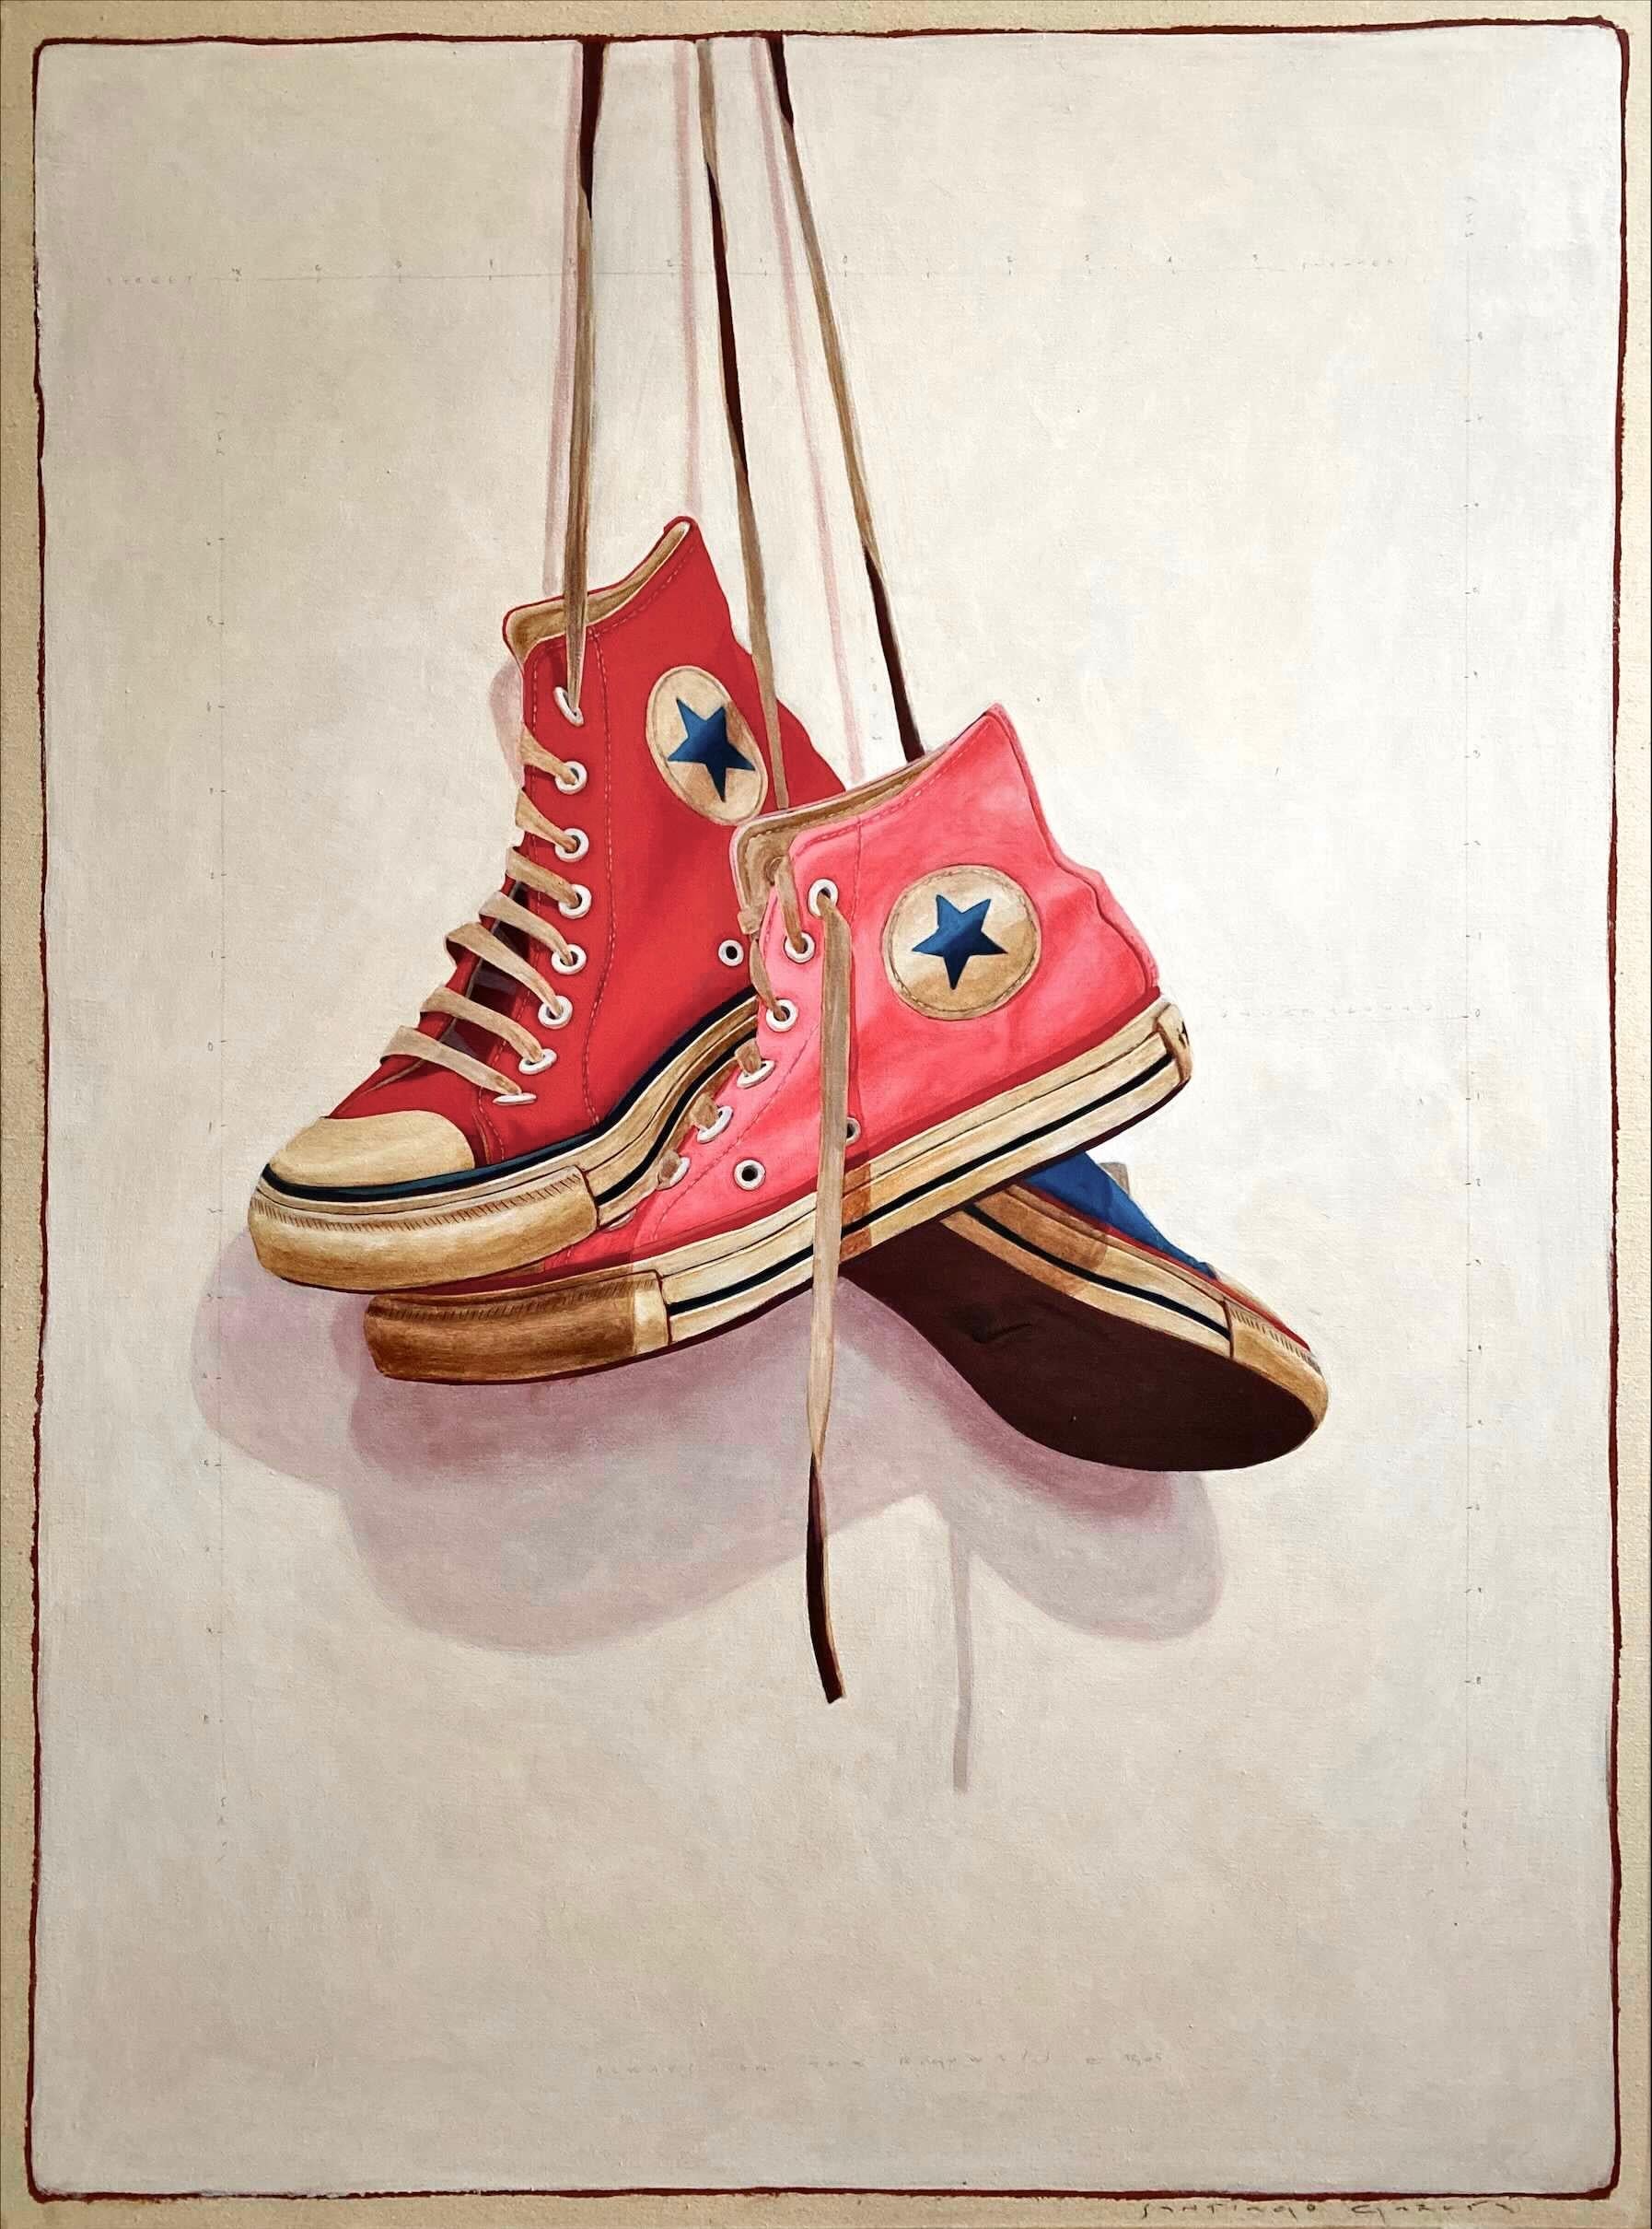 Santiago Garcia Still-Life Painting – Fotorealistisches Ölgemälde "#1505" mit roten, rosa und blauen, konverse Sneakers